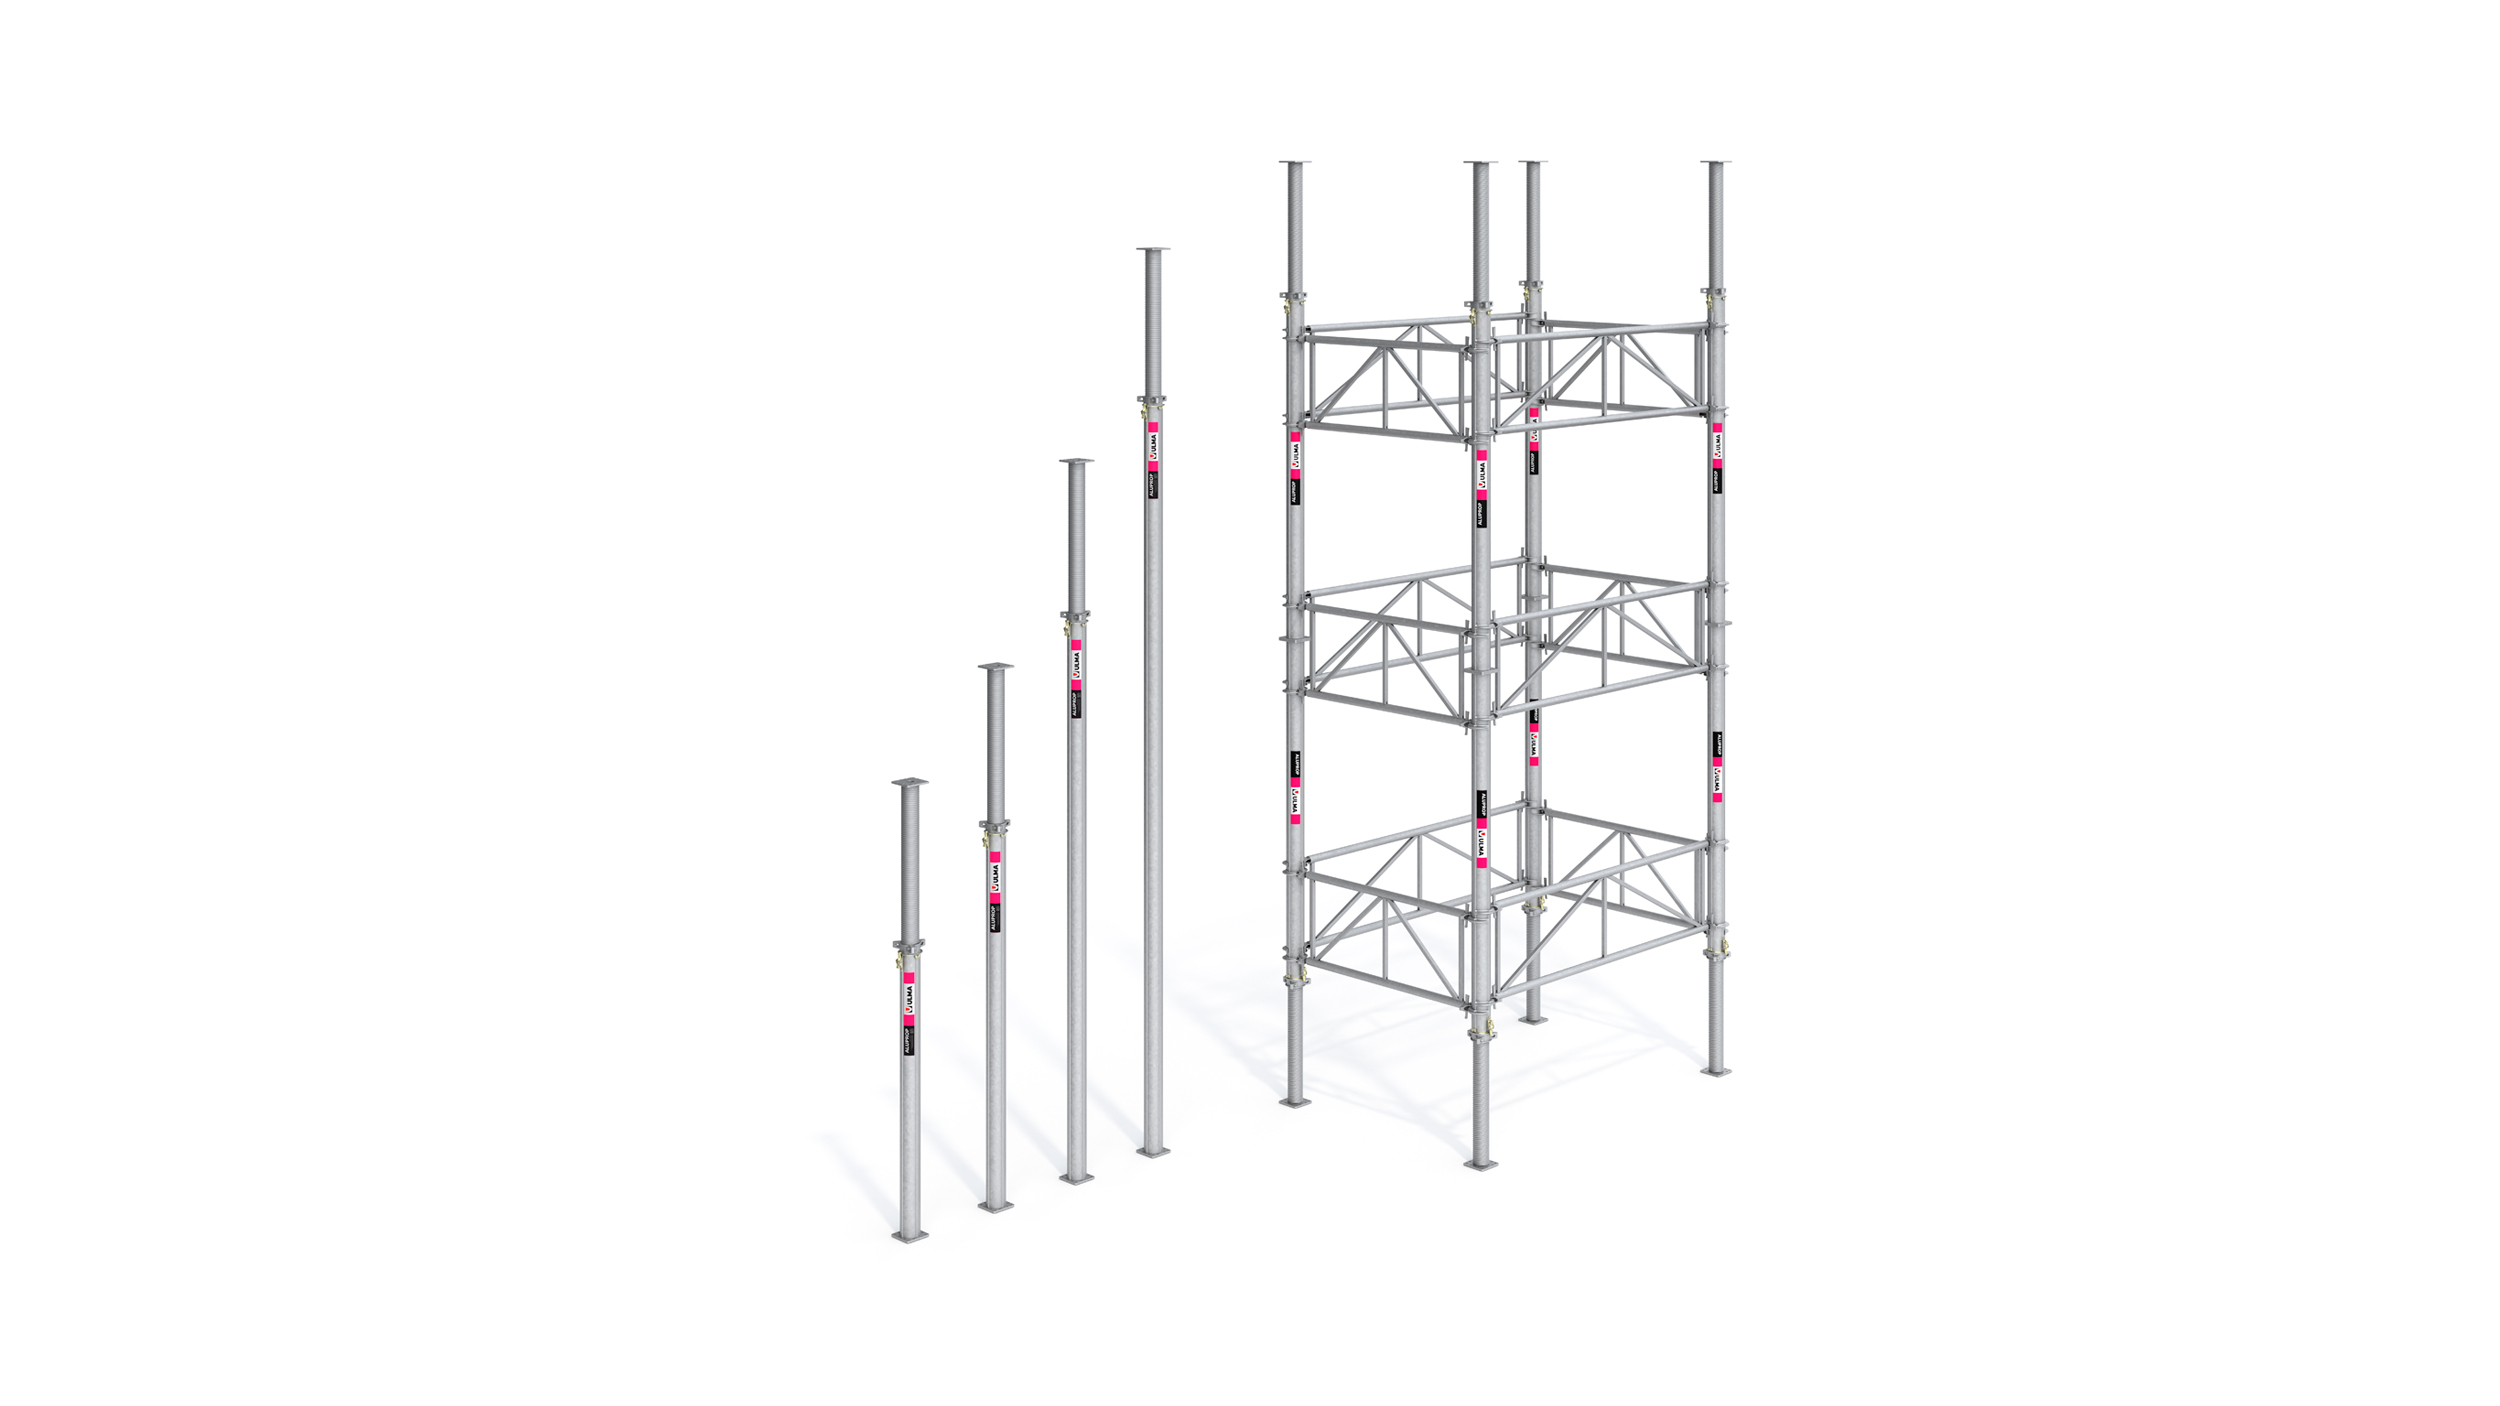 Certifikovaný podpůrný systém pro vysoké zatížení. Vyznačuje se lehkými komponenty a možností konfigurace věže do výšky až 12 m.